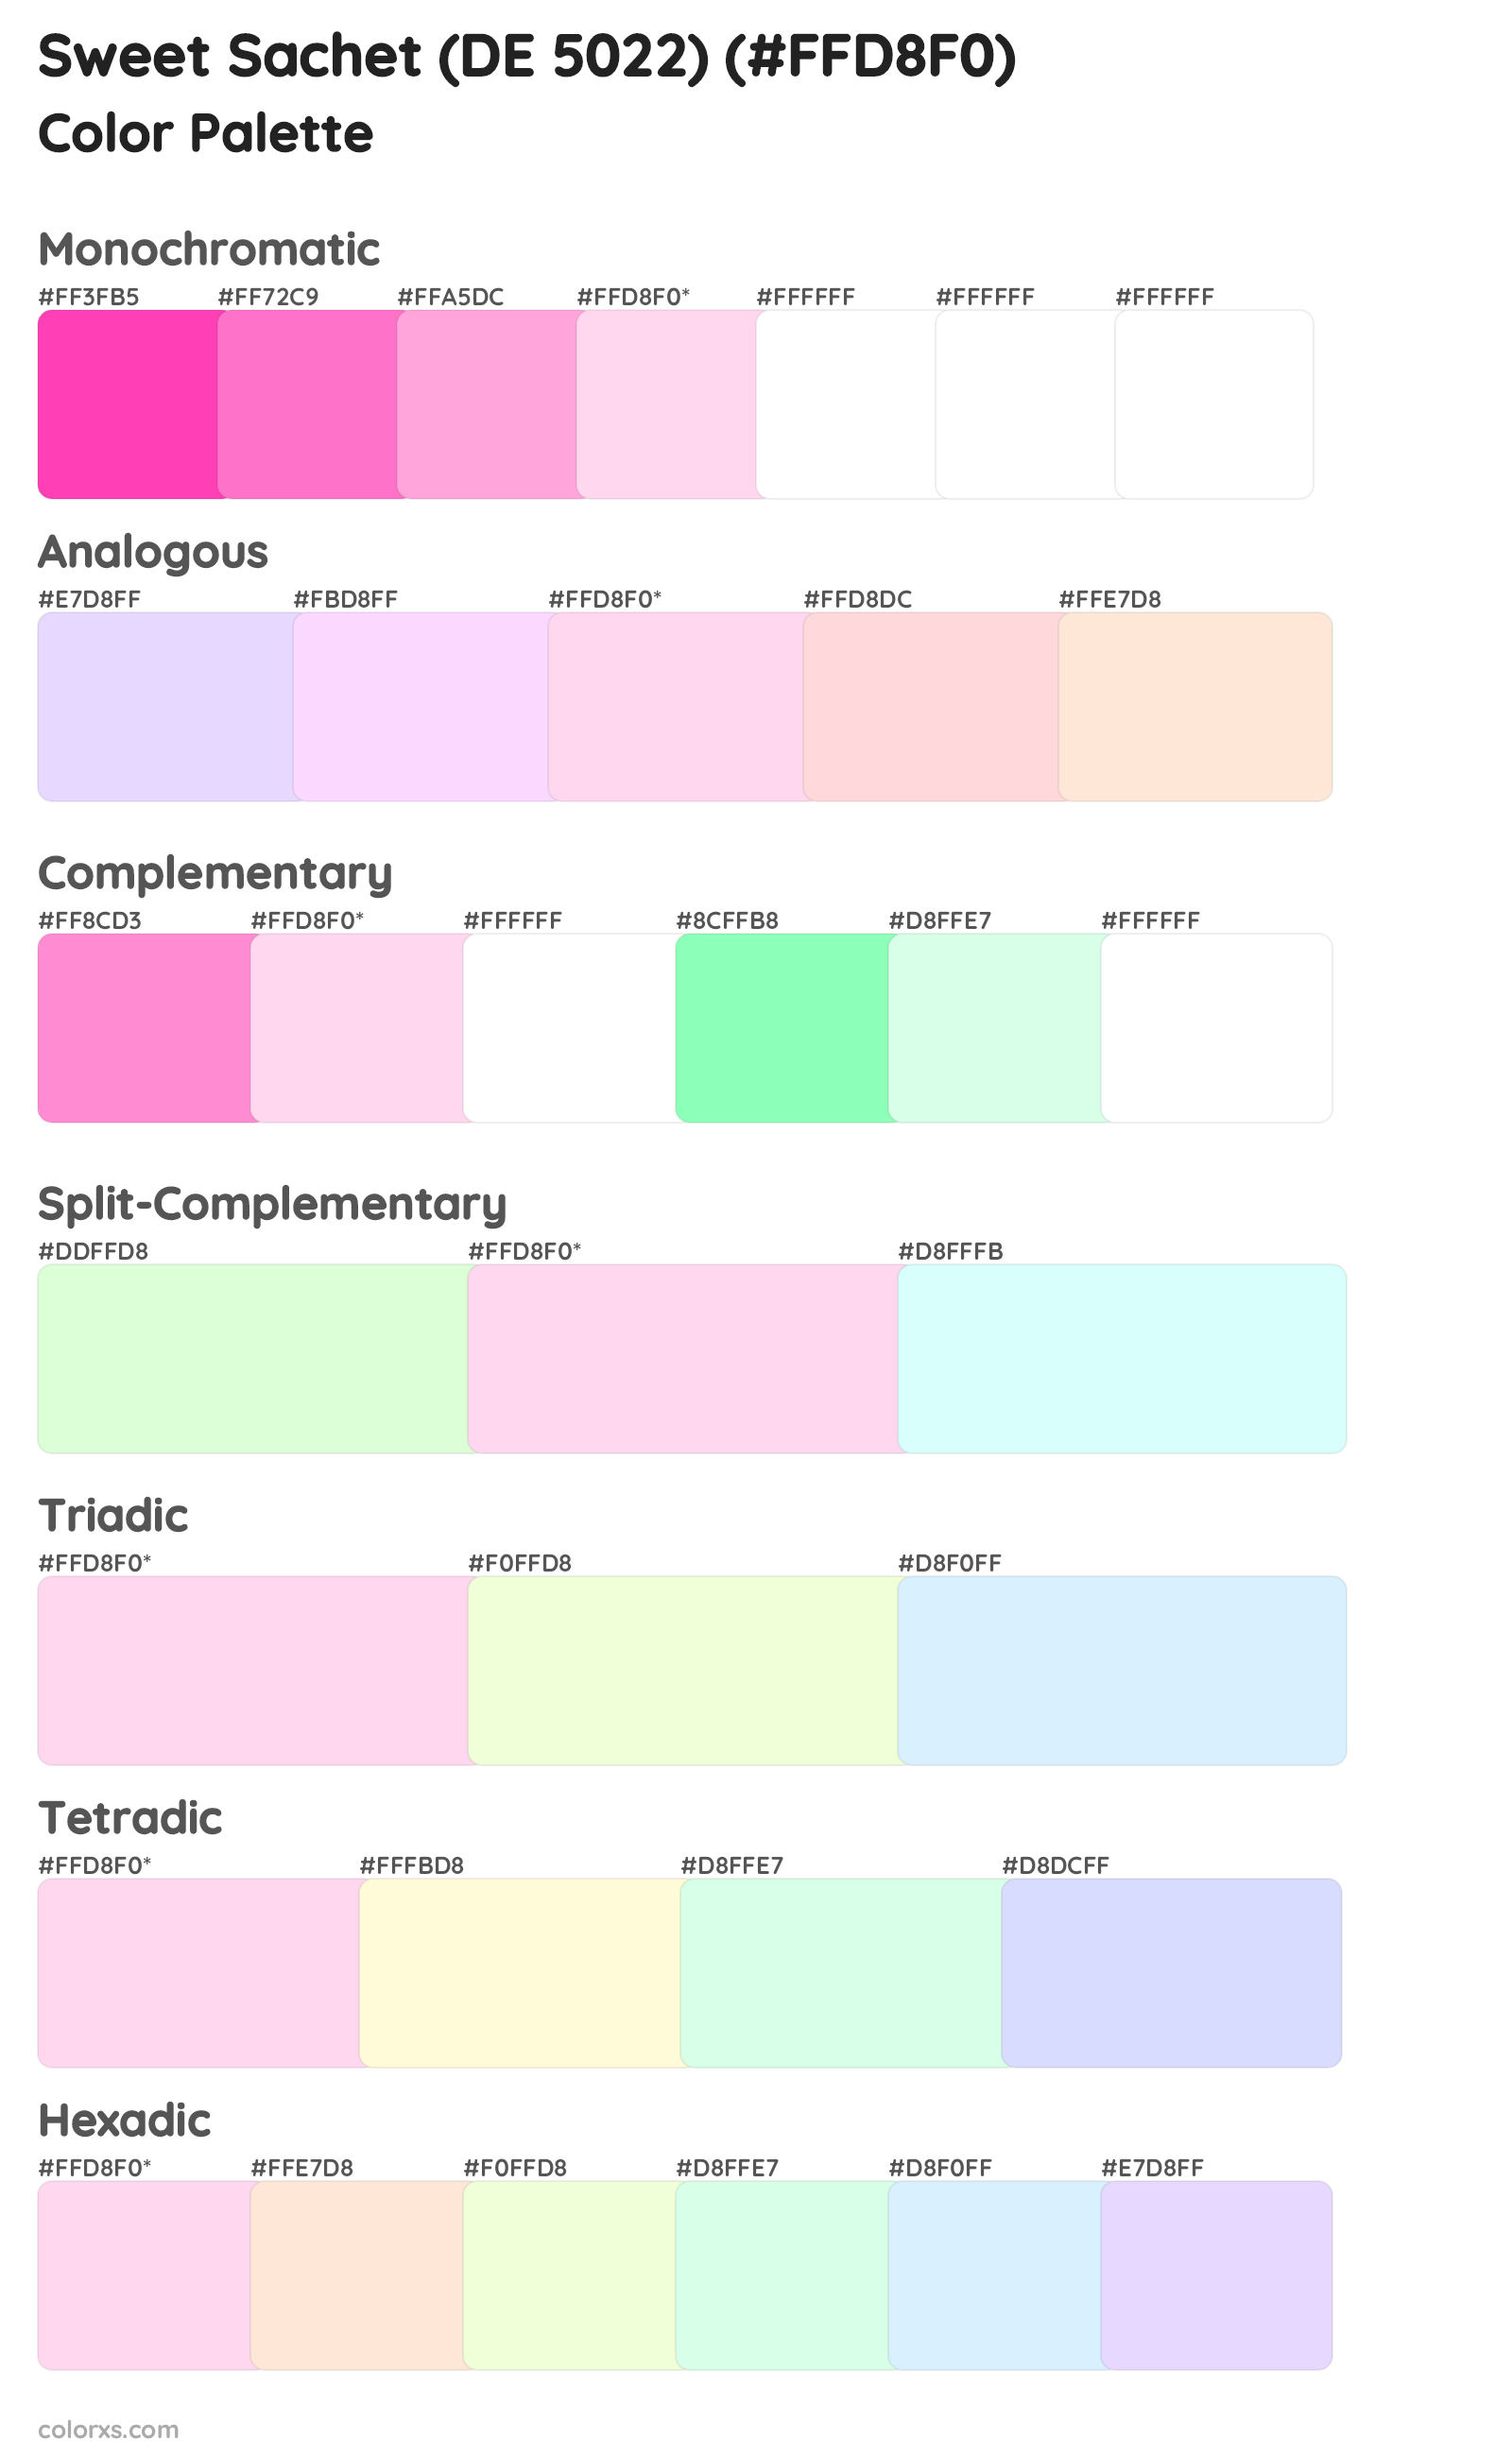 Sweet Sachet (DE 5022) Color Scheme Palettes